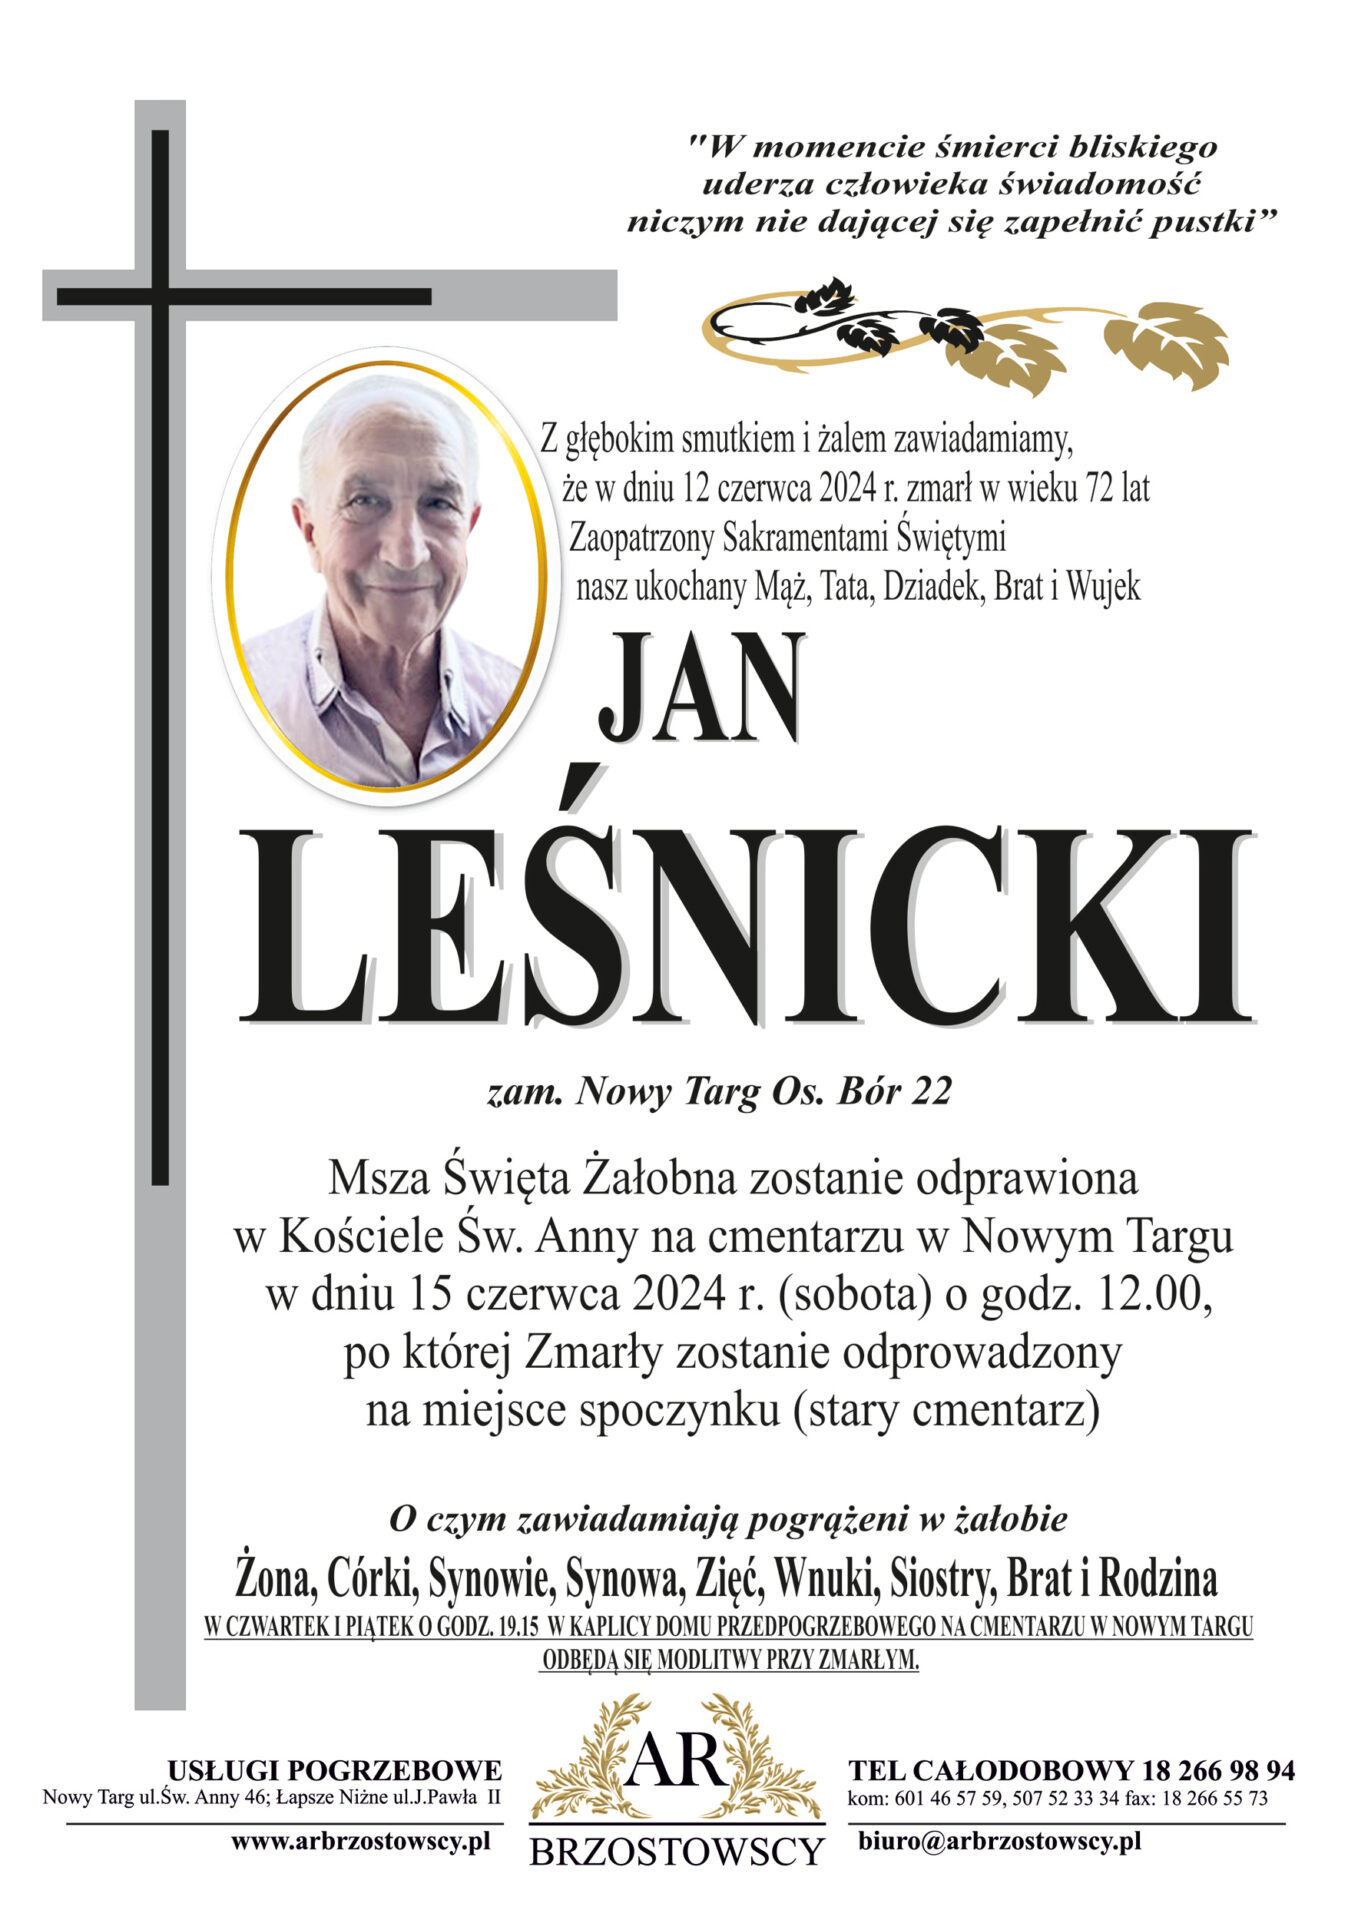 Jan Leśnicki